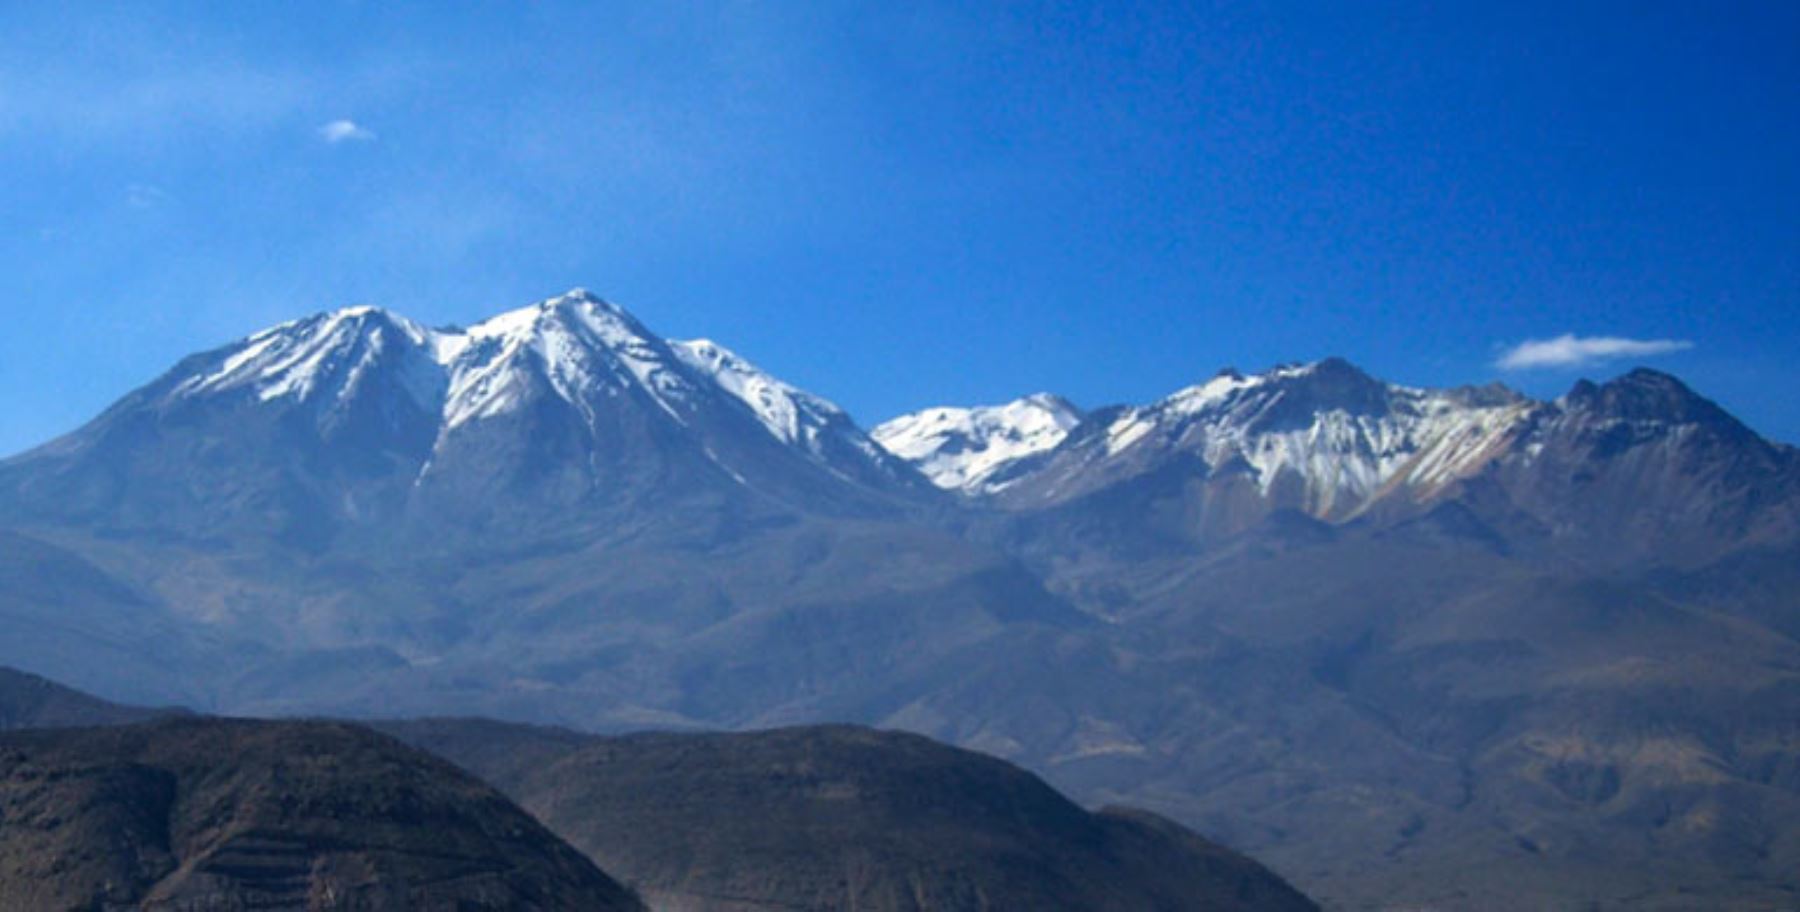 Investigadores elaborarán por primera vez mapa de riesgo del volcán Chachani, ubicado en Arequipa, macizo sobre el cual también se investigará su frecuencia eruptiva, informó Marco Rivera, coordinador del Observatorio Vulcanológico del Instituto Geológico, Minero y Metalúrgico (Ingemmet). ANDINA/Difusión